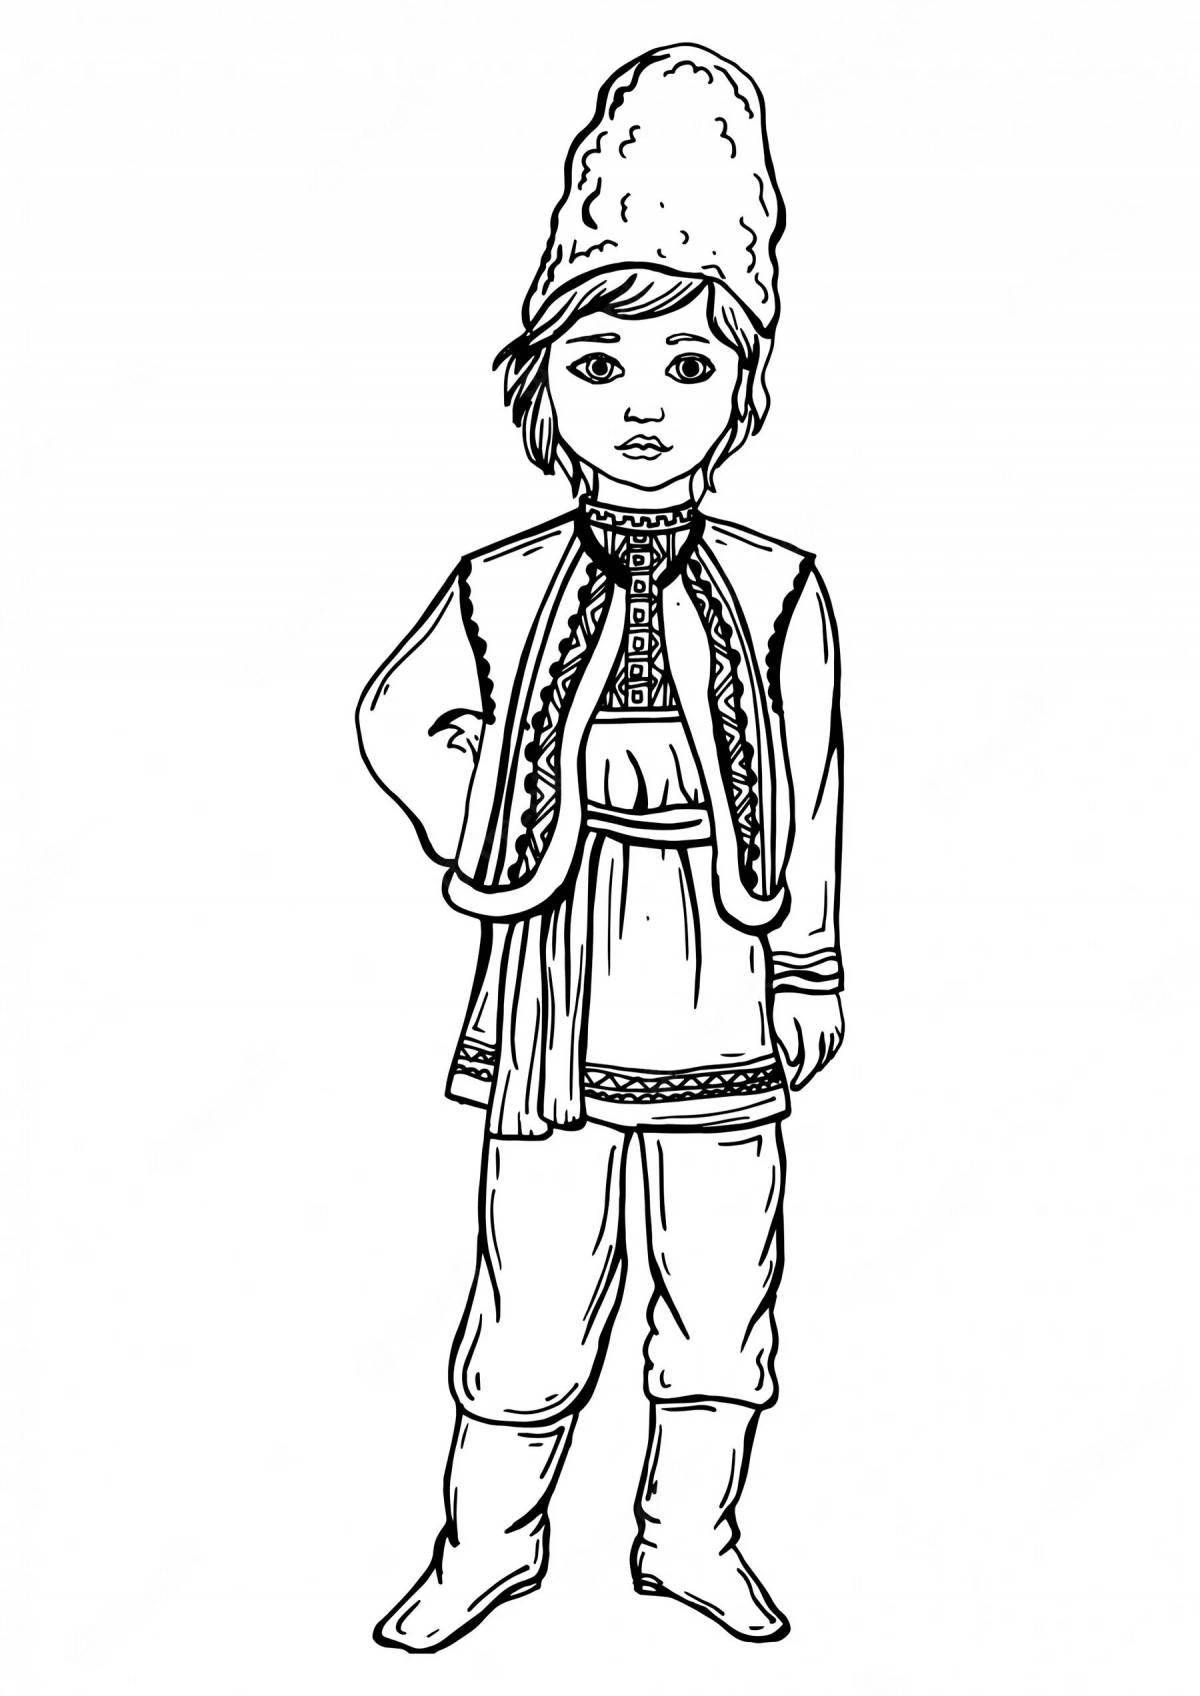 Bashkir national costume for children #1